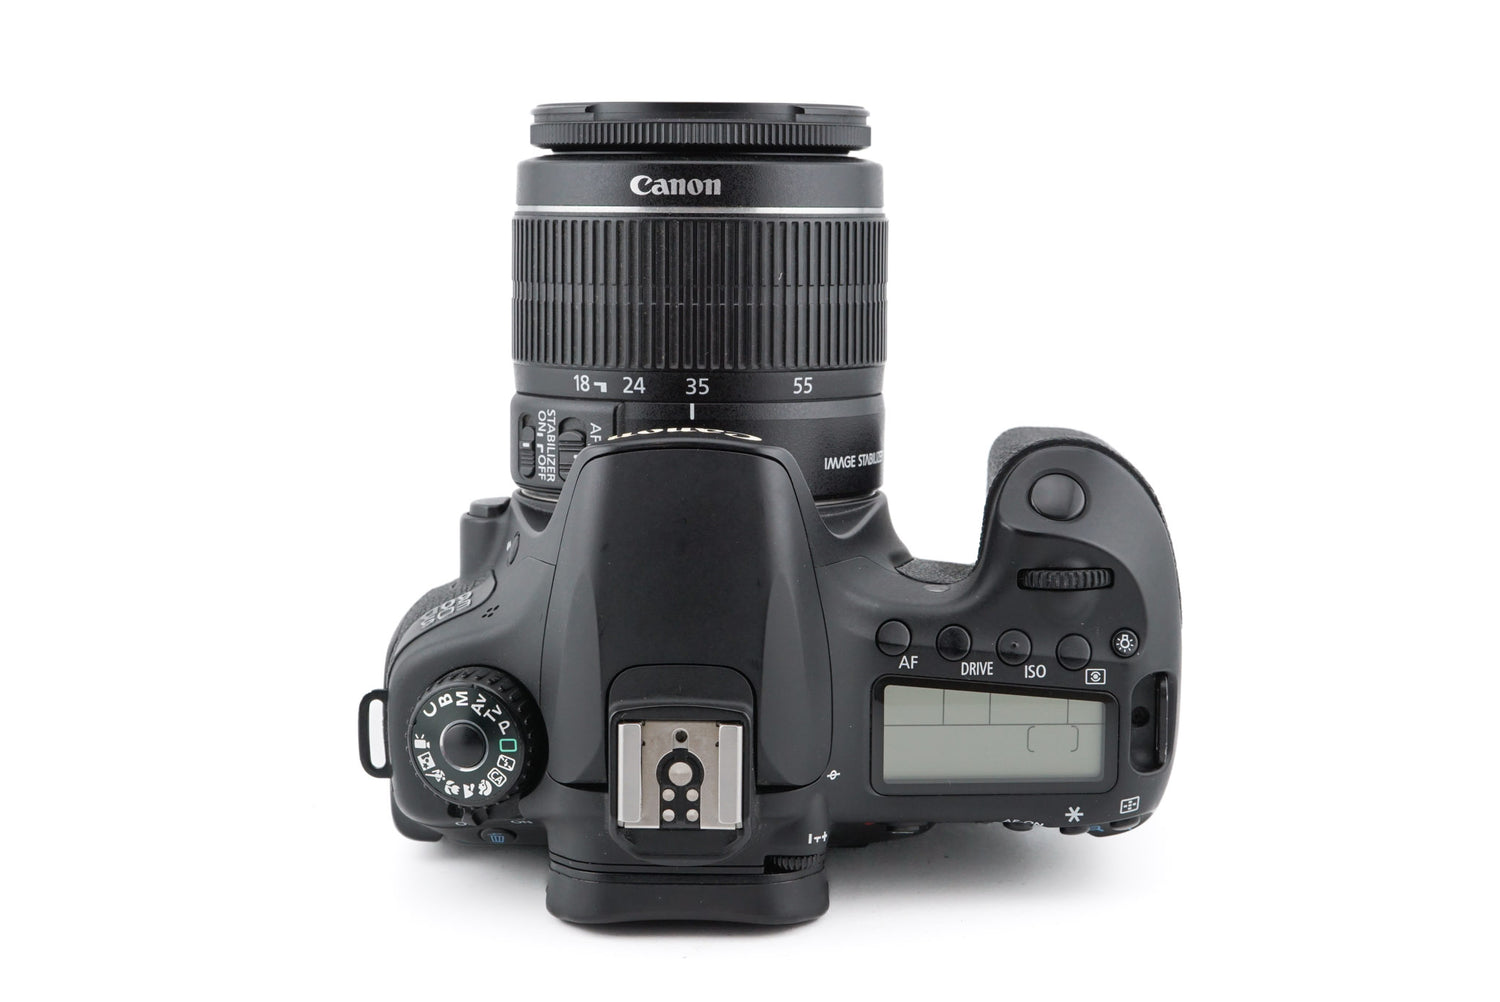 Canon デジタル一眼レフカメラ EOS 60D レンズキット EF-S18-135mm F3.5-5.6 IS STM付属 EOS60D 